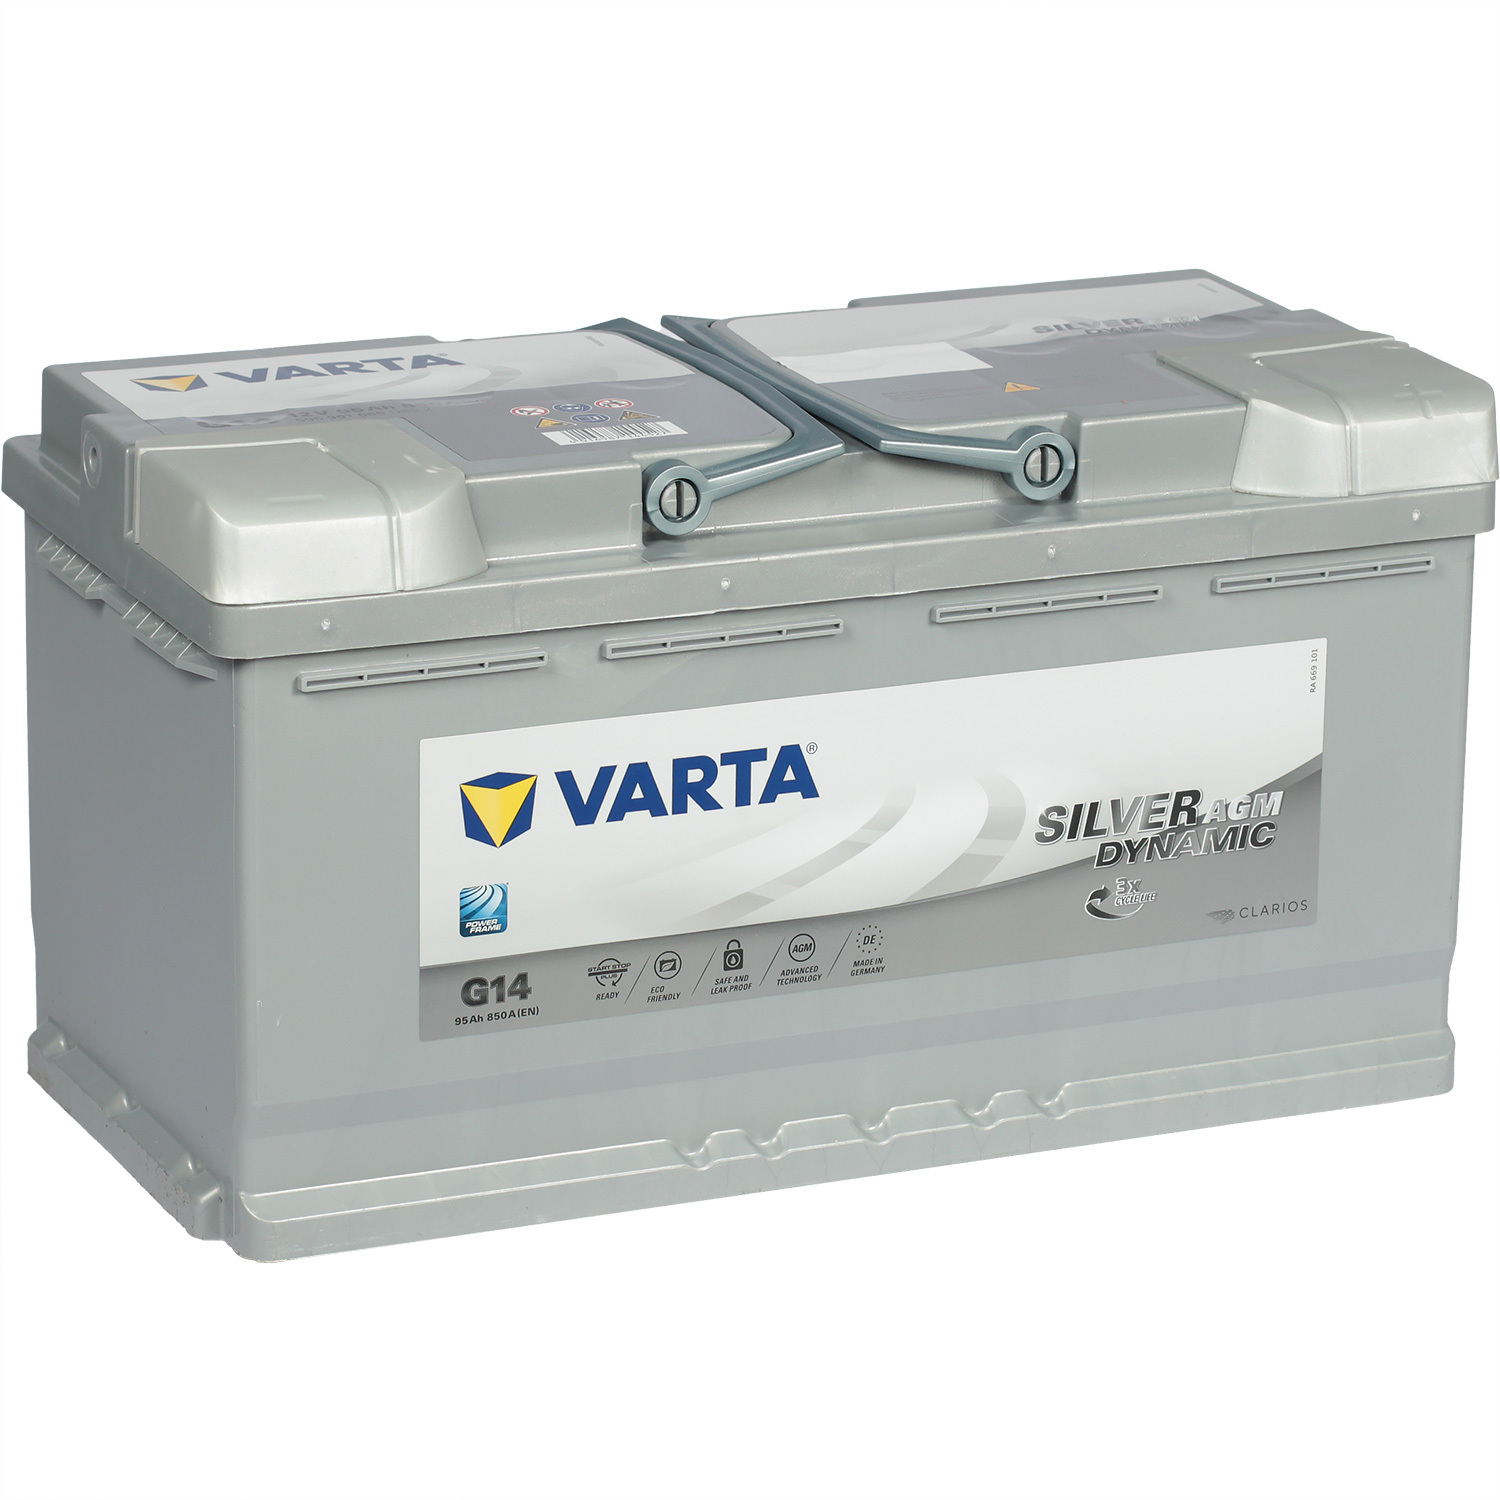 Varta Автомобильный аккумулятор Varta AGM G14 95 Ач обратная полярность L5 varta автомобильный аккумулятор varta 45 ач обратная полярность b24l